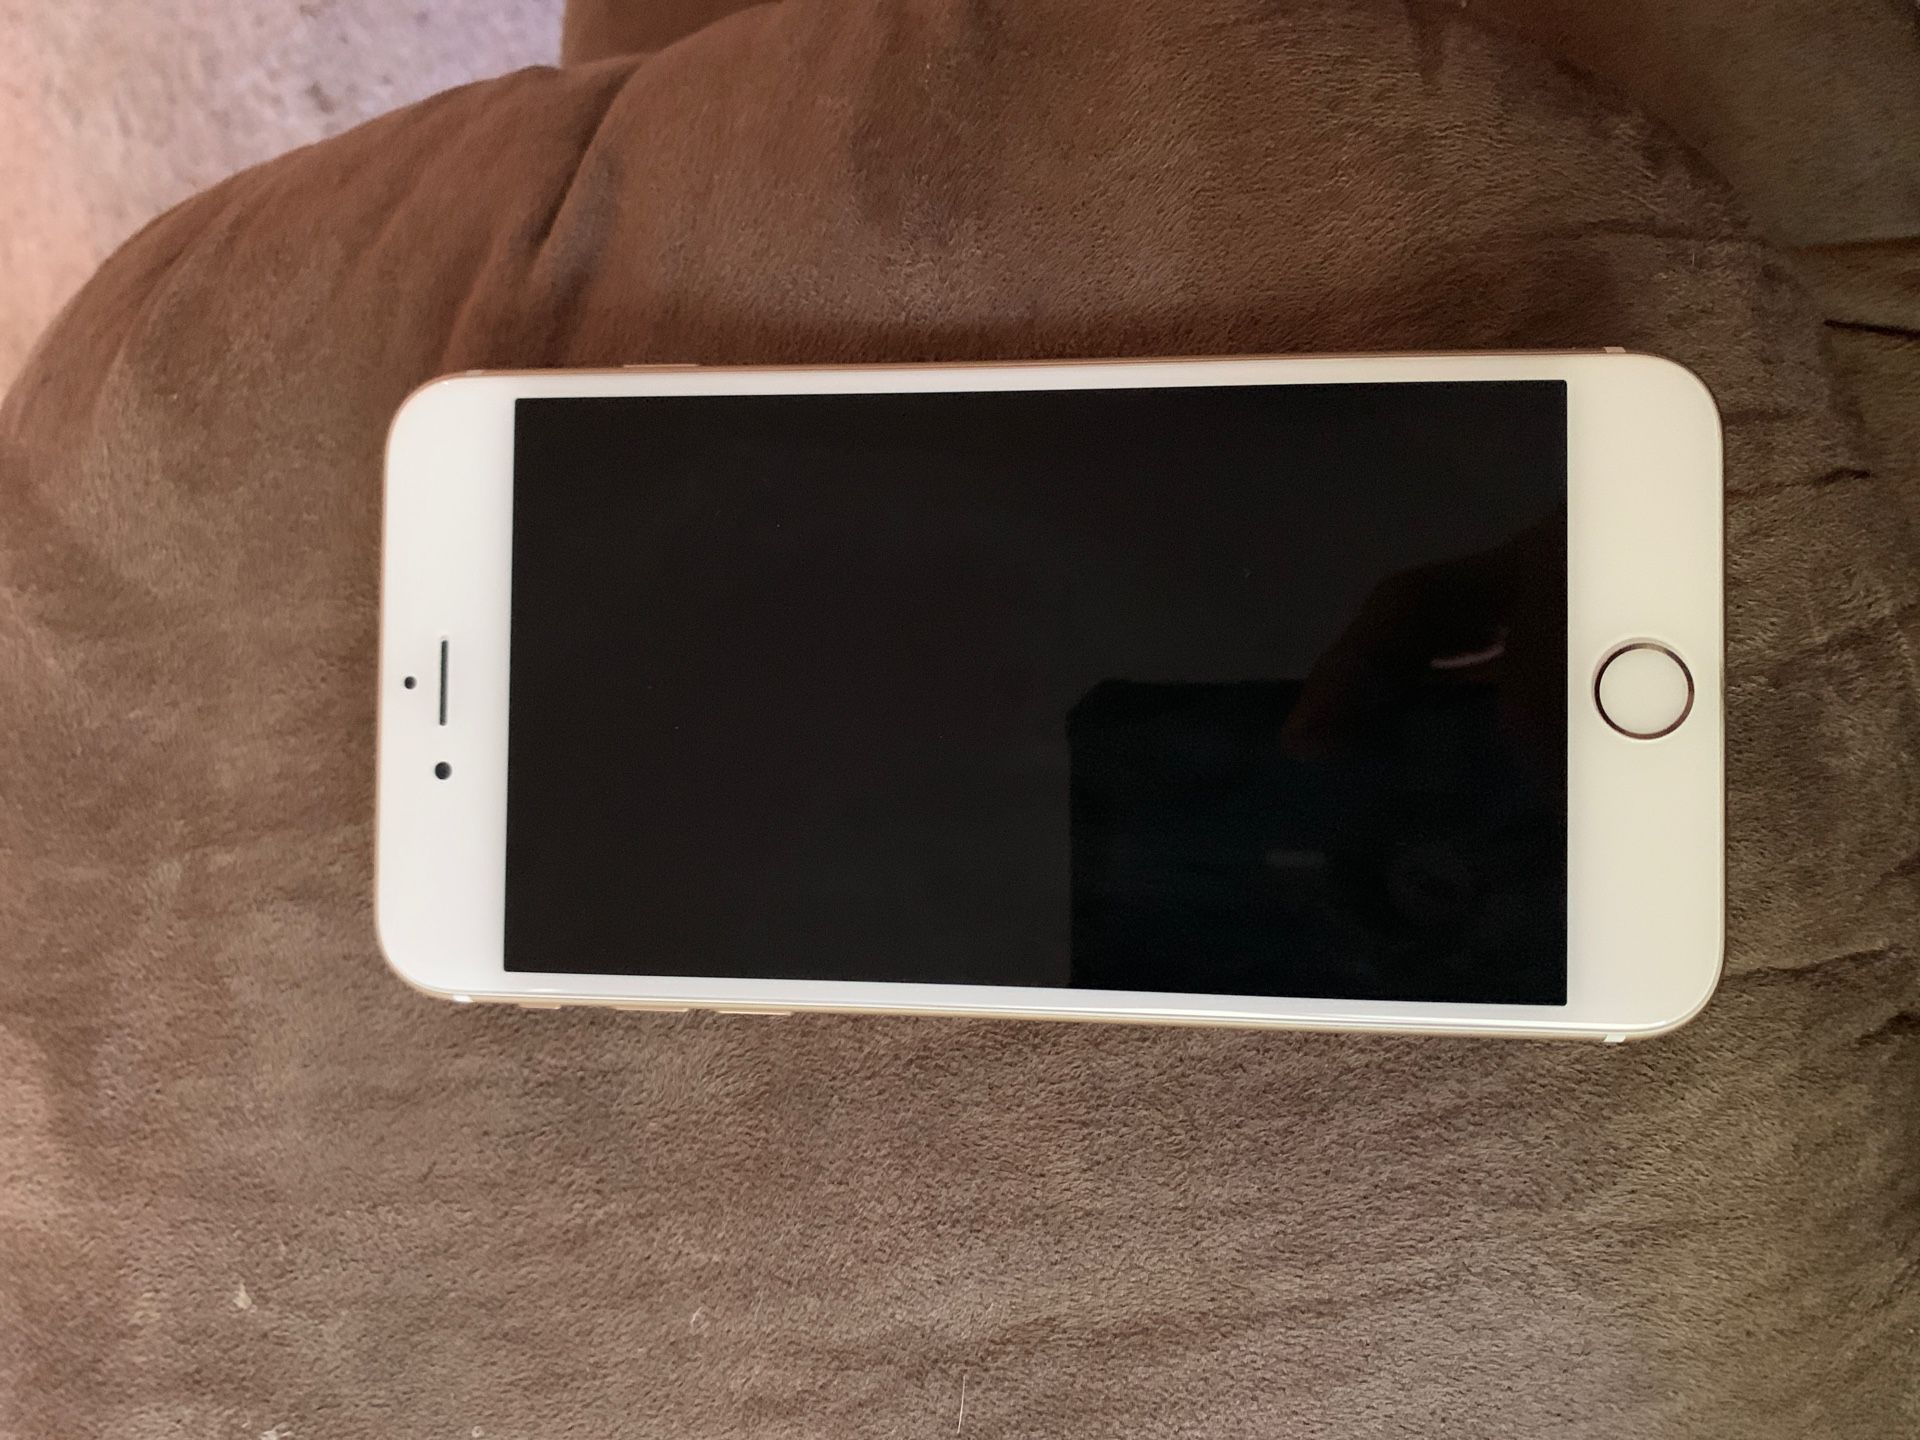 iPhone 6 Plus 64gb unlocked rose gold